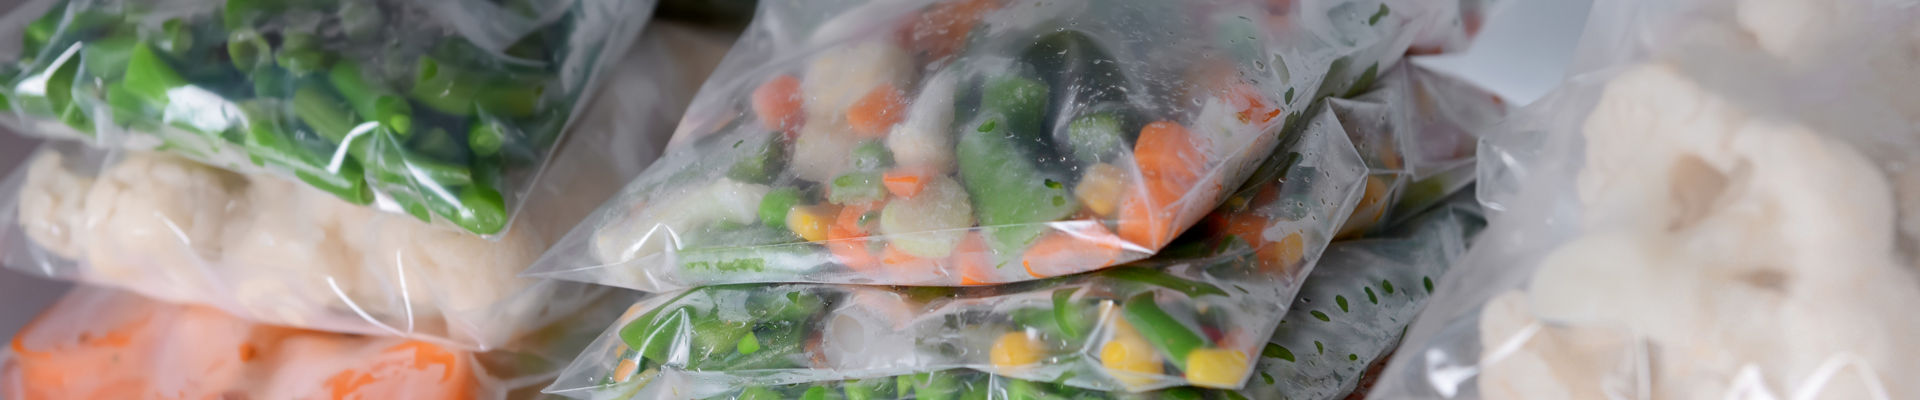 Vegetais congelados no congelador com o logotipo RETAIN